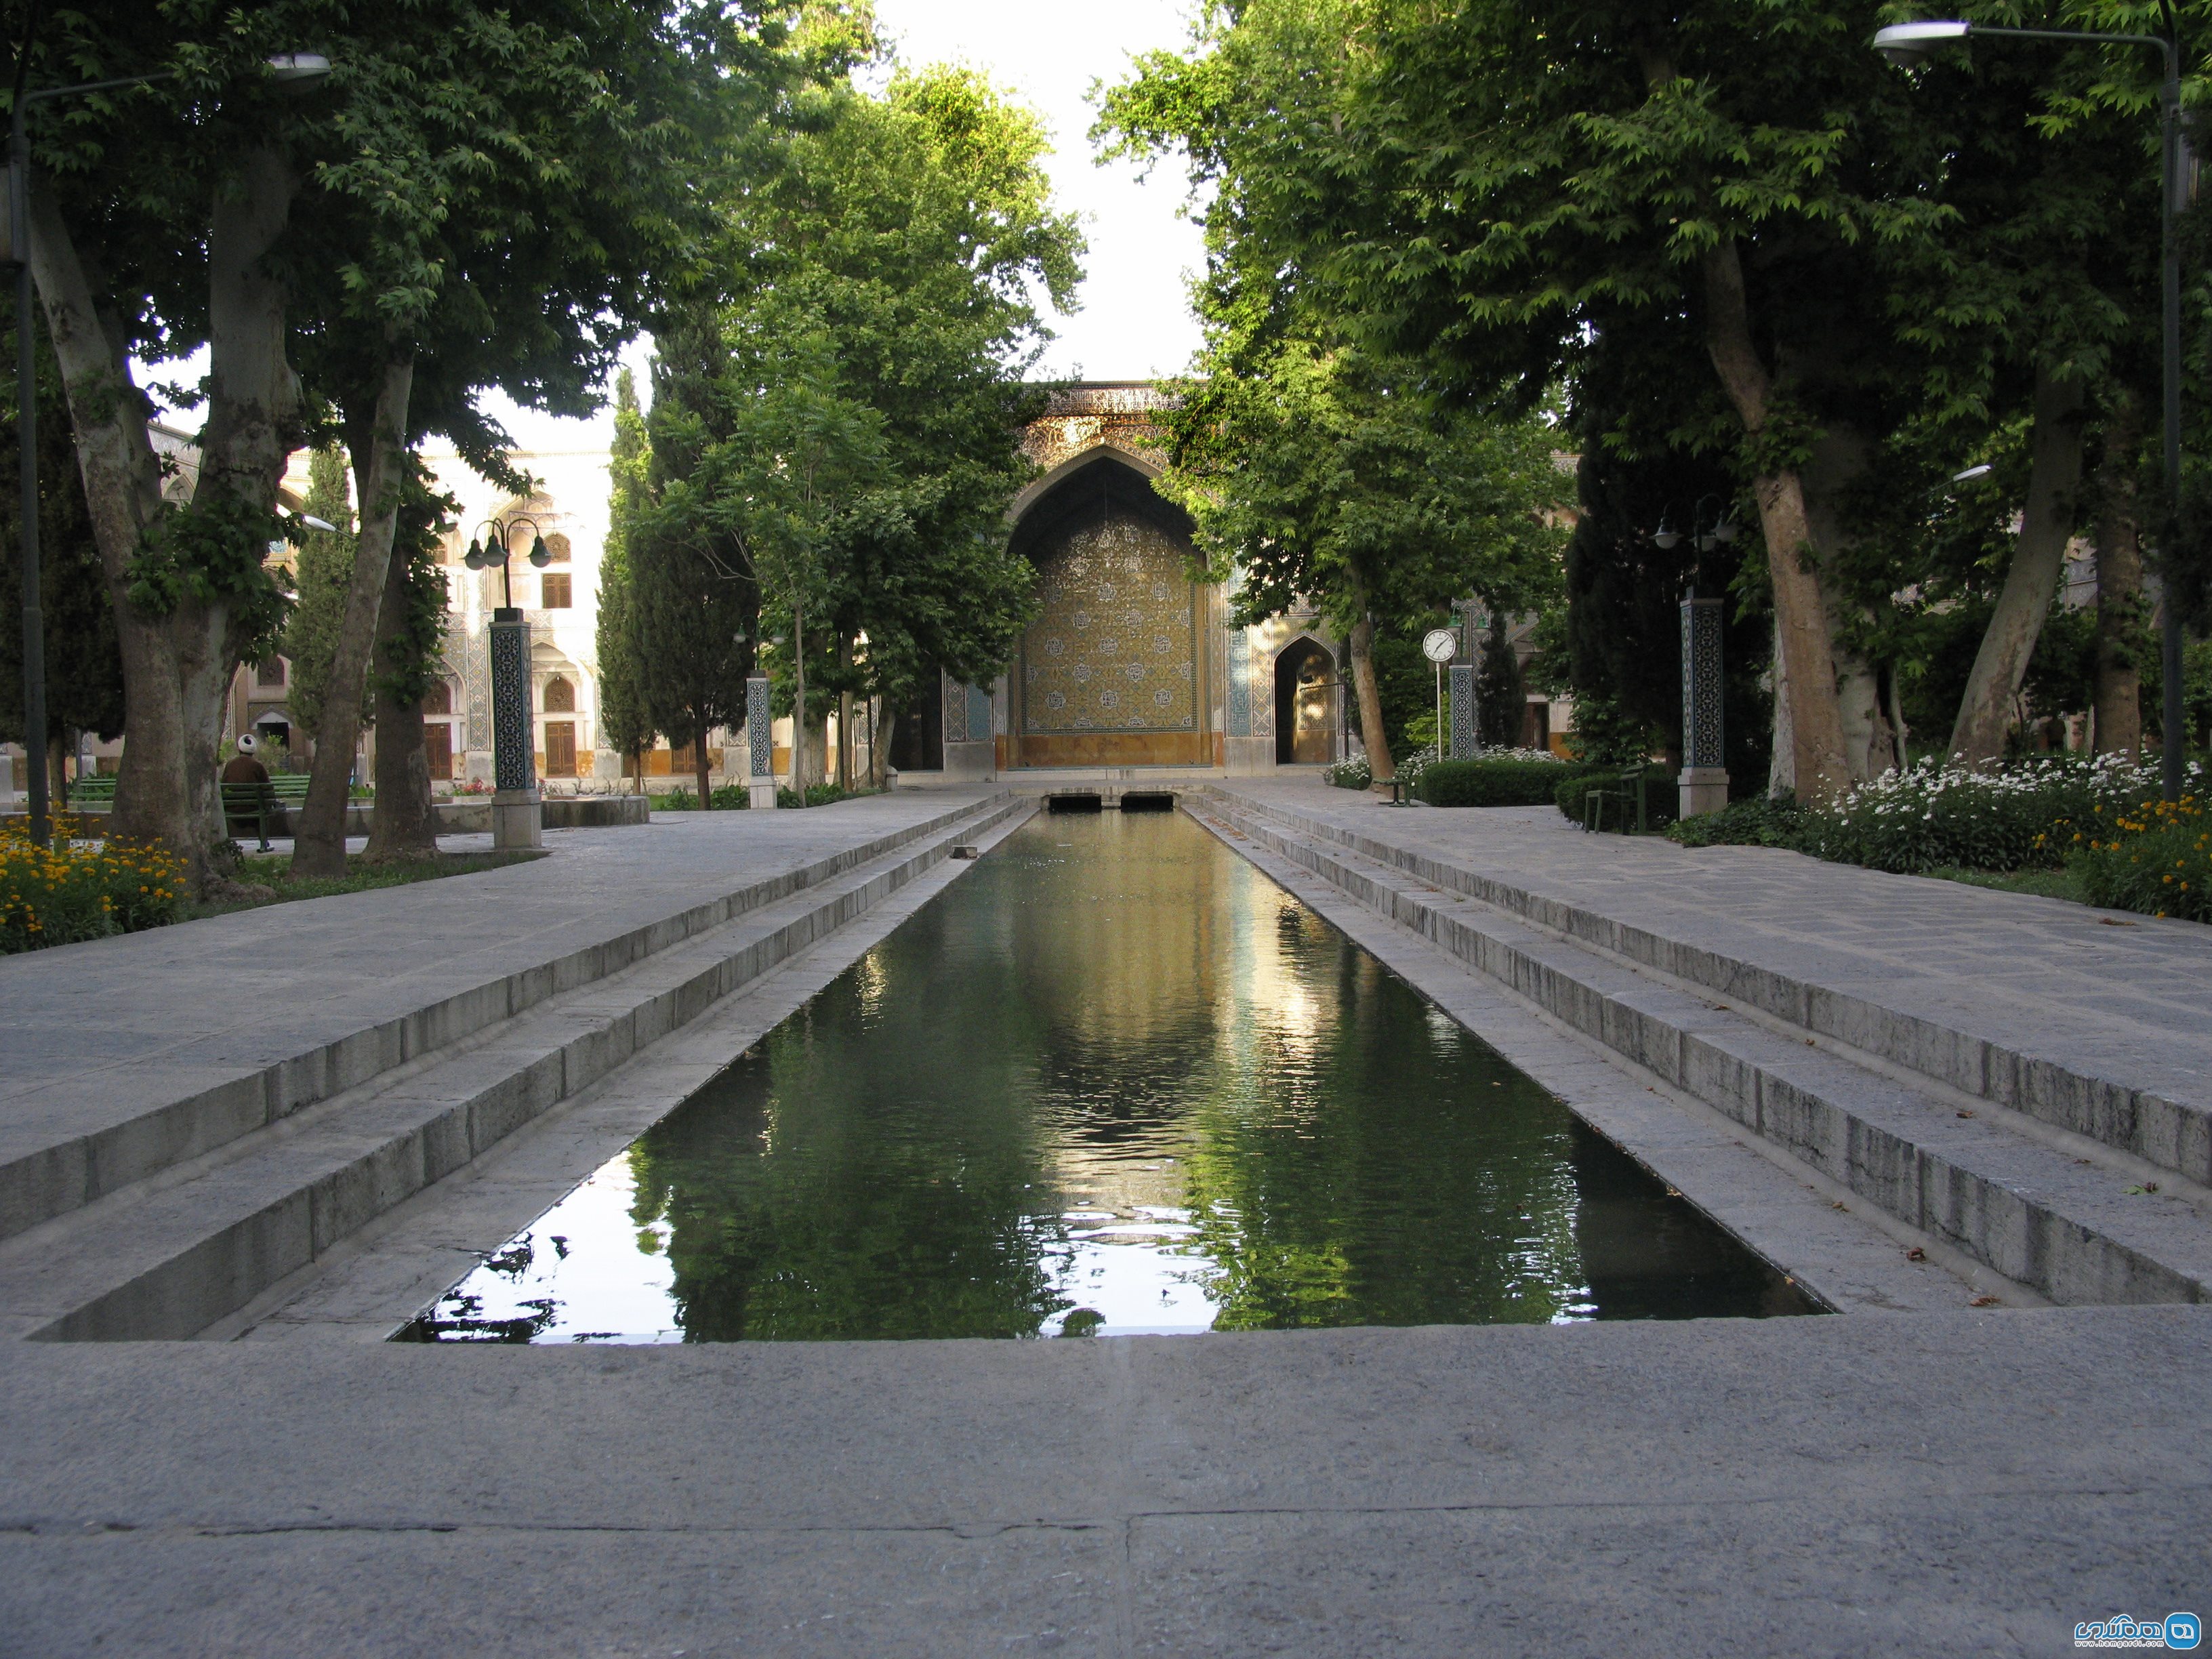  مدرسه چهارباغ اصفهان